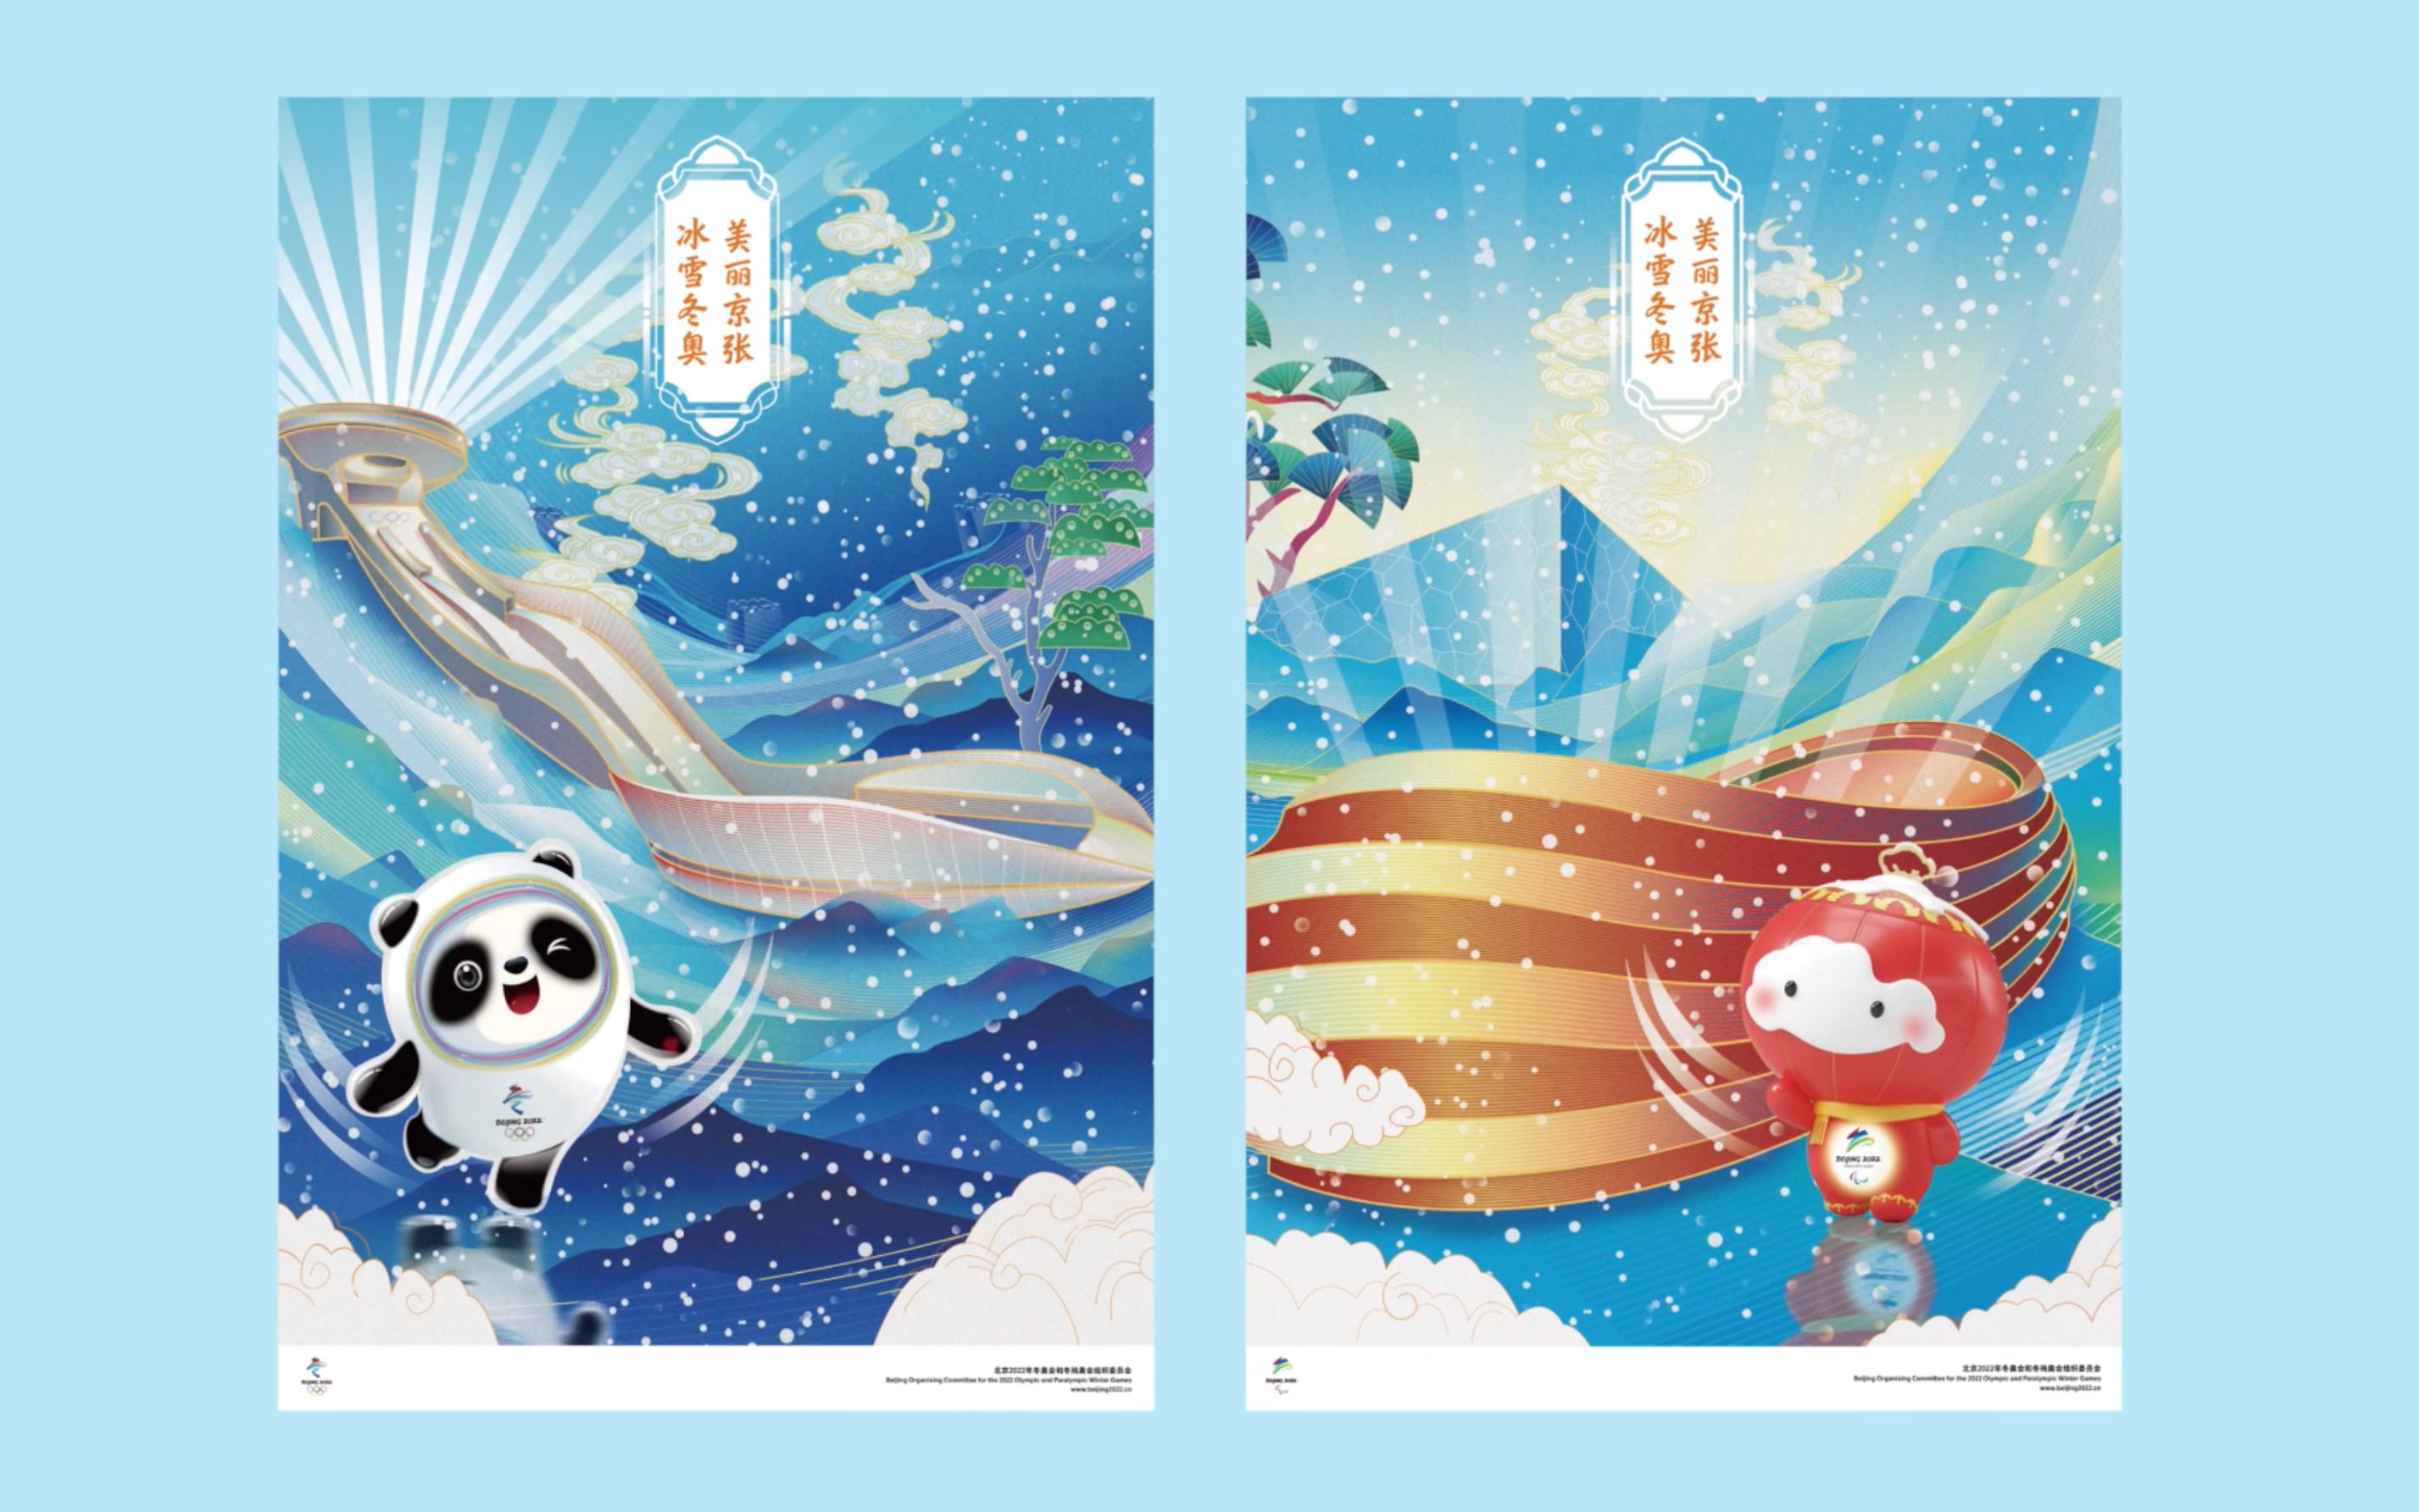 北京冬奥宣传海报来喽!来欣赏多艺术元素的碰撞吧